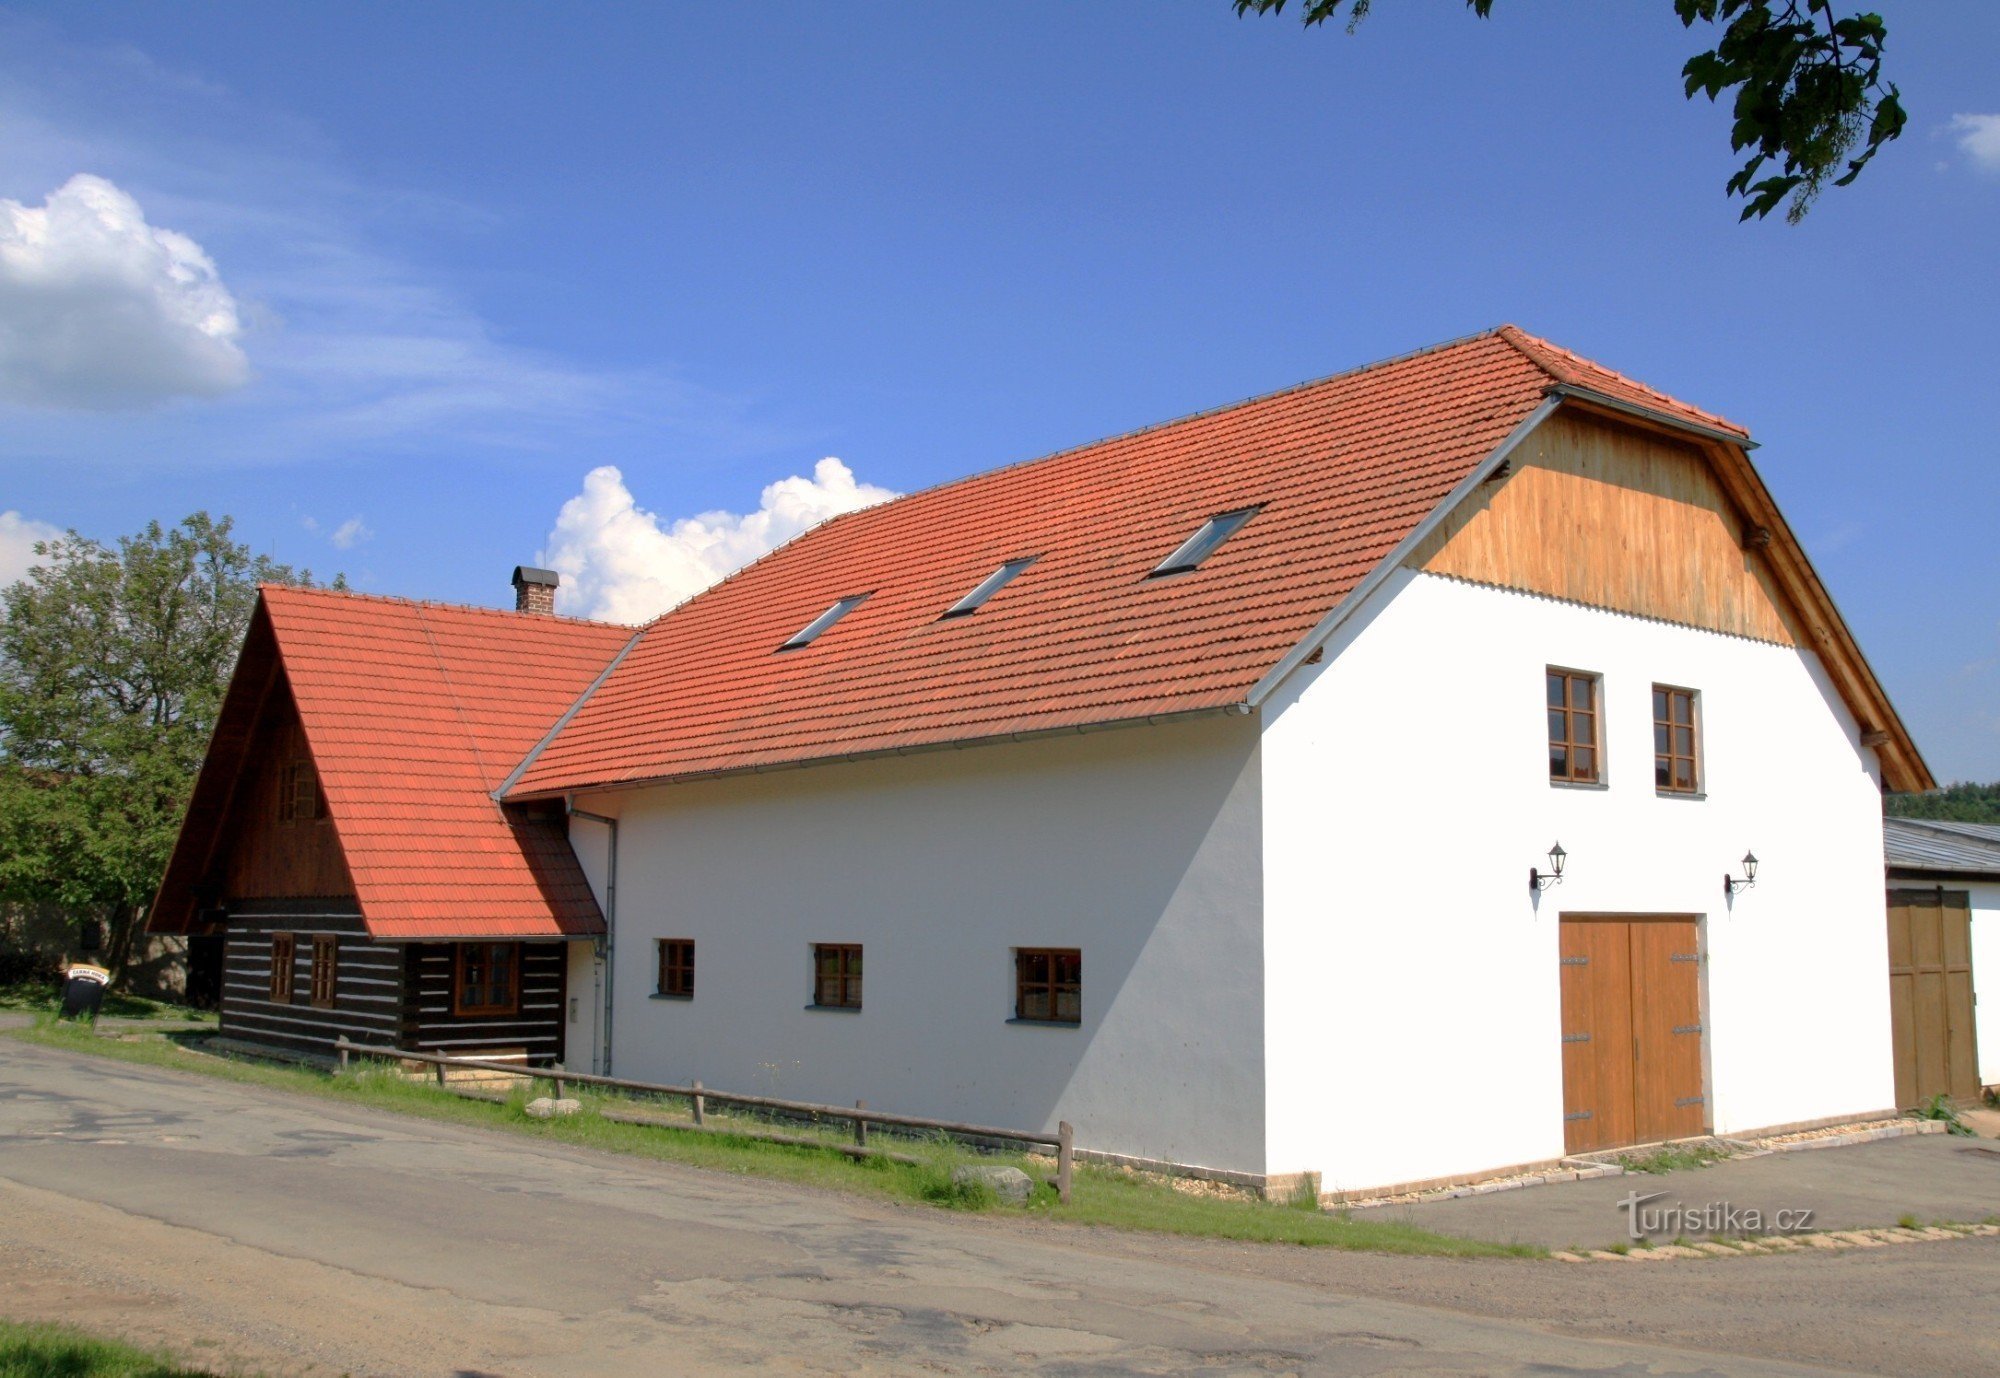 Horní Smržov - museum för folklig arkitektur